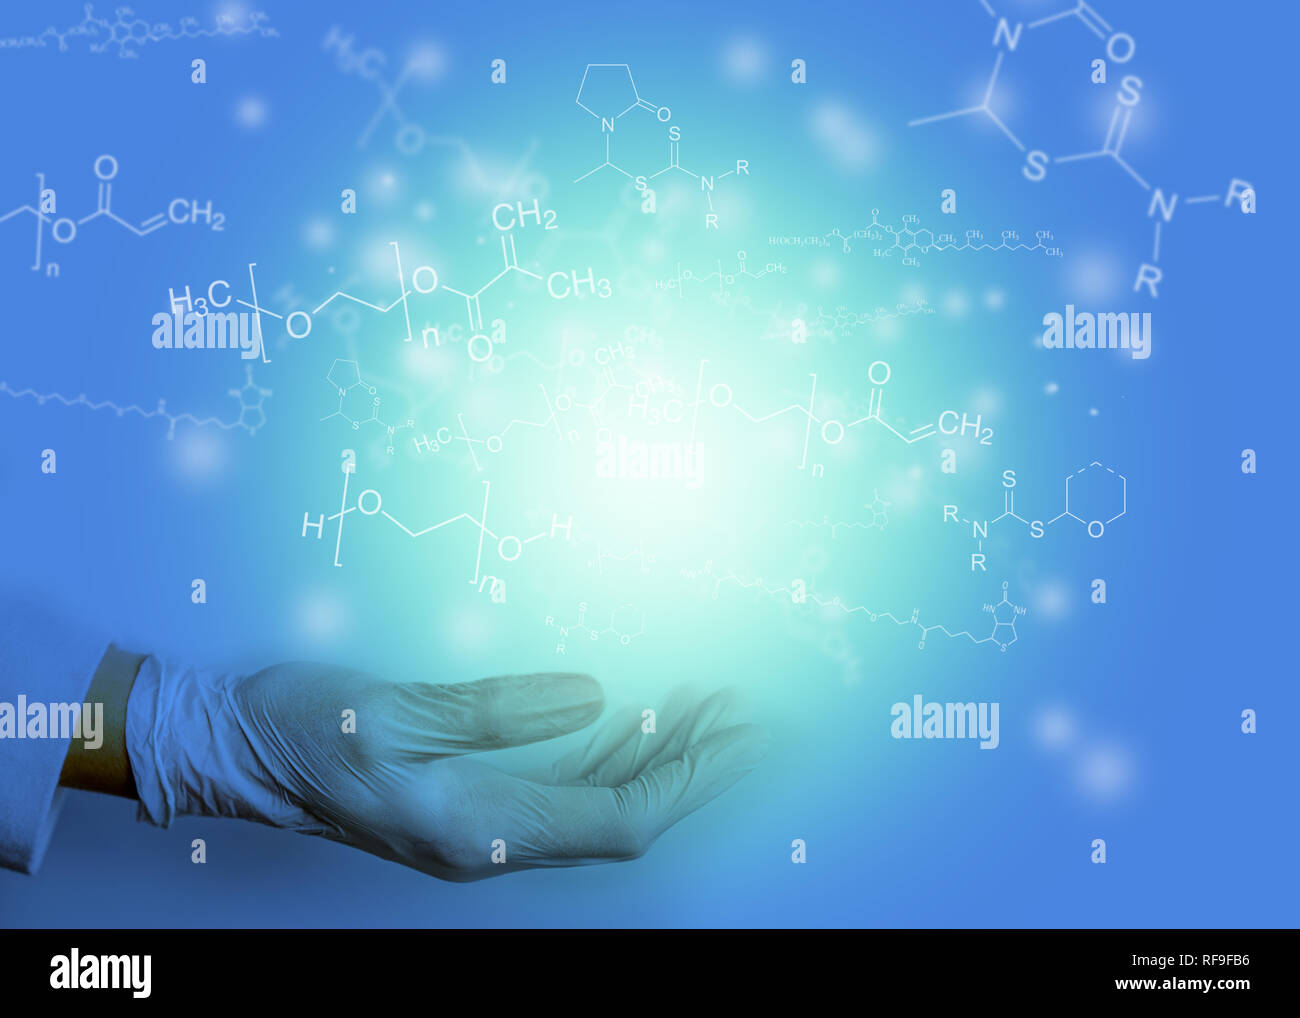 La main avec la lumière et les formules chimiques fond bleu - chimiste et présenter des idées de concept Banque D'Images